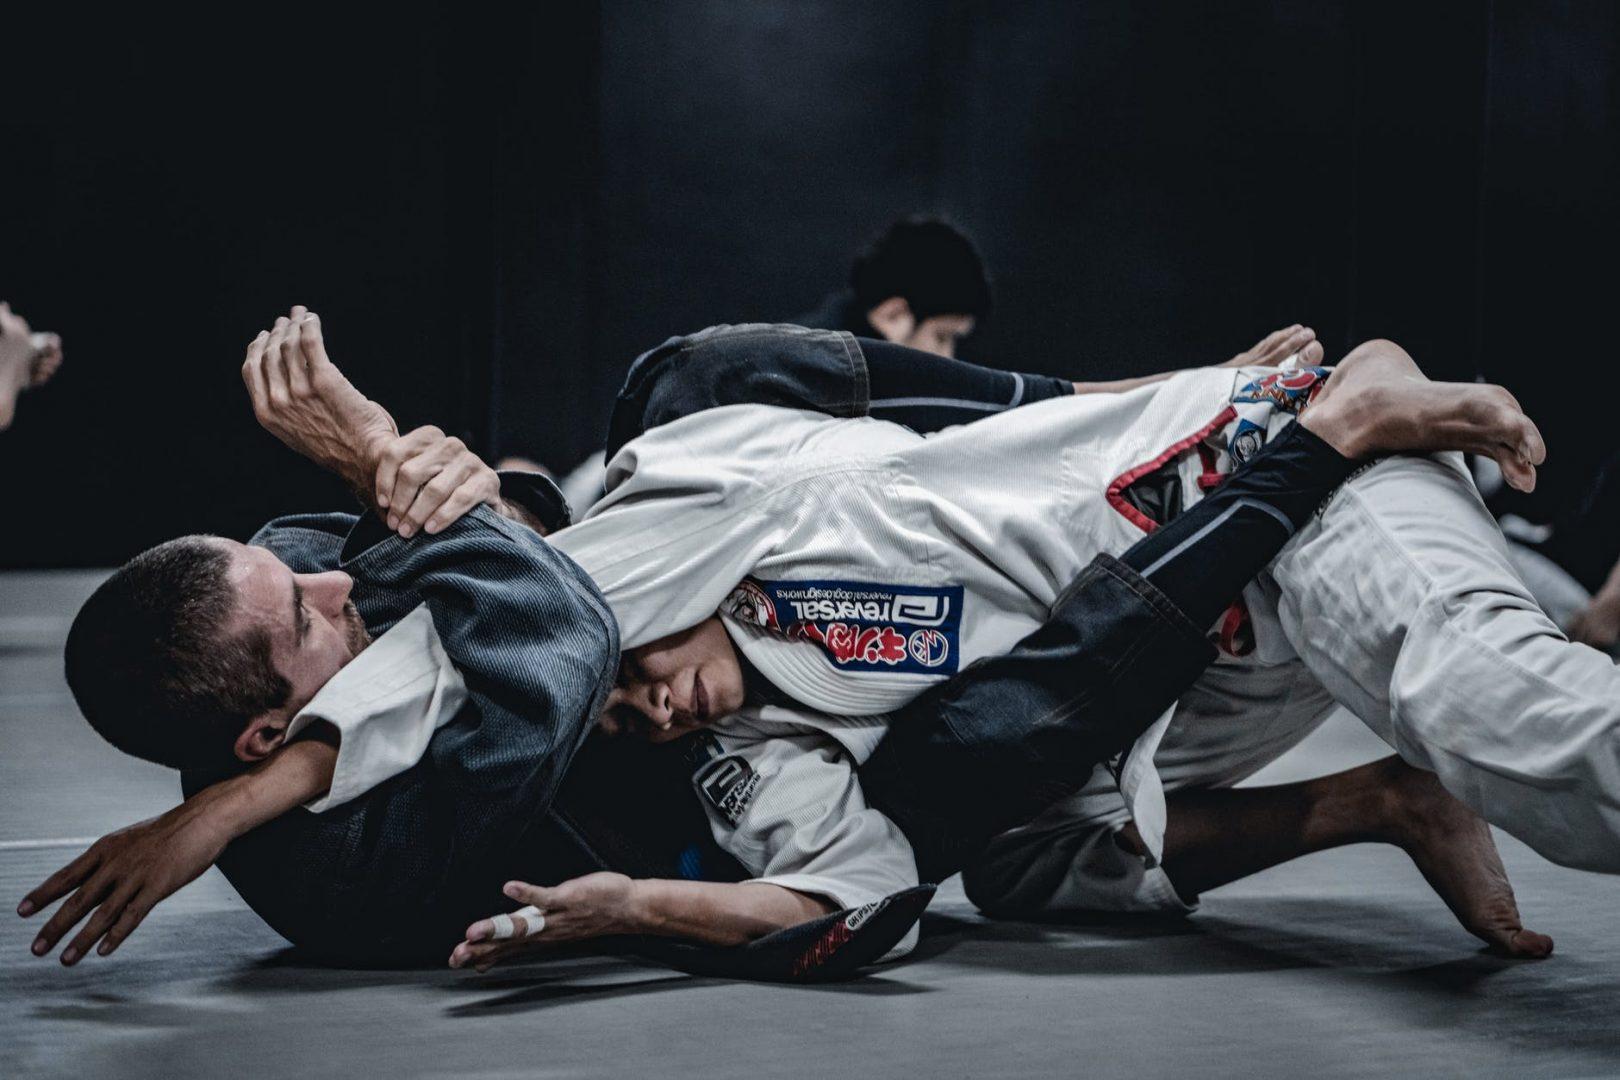  Artes marciales: historia de los distintos tipos de lucha para la defensa personal